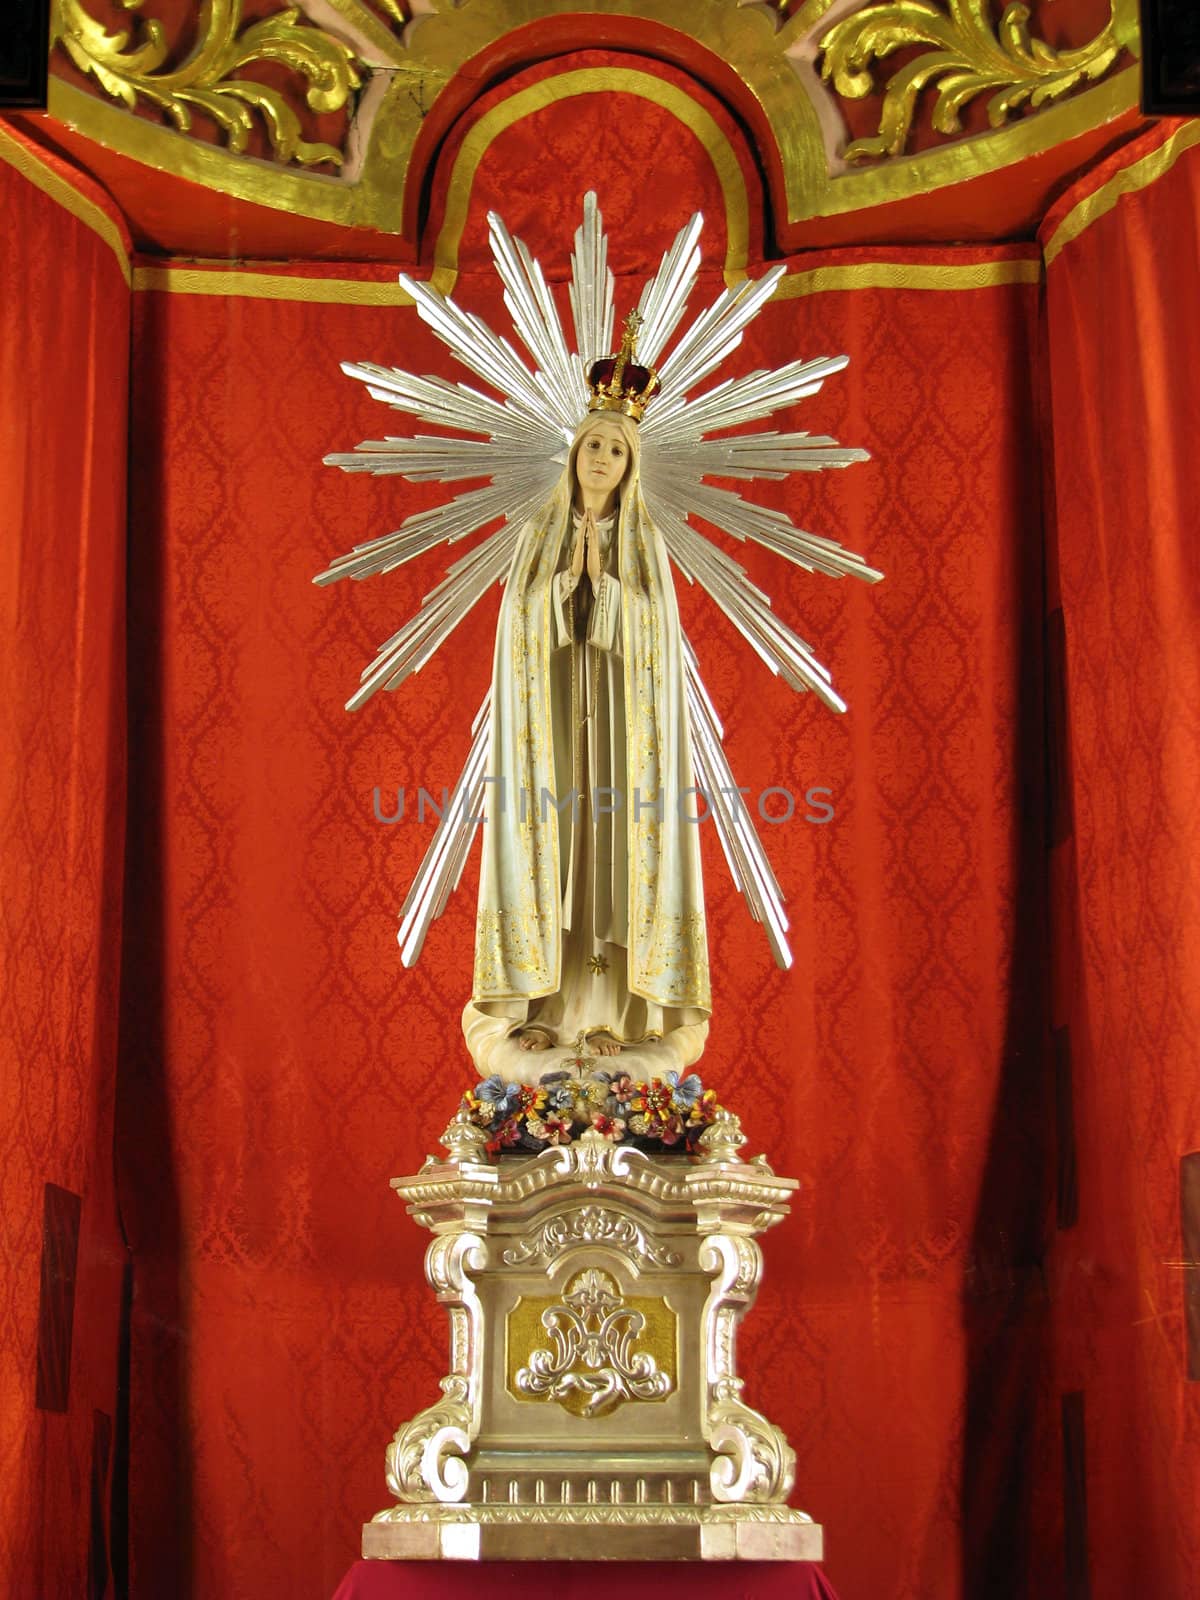 A statue of Our Lady of Fatima in Zurrieq, Malta.